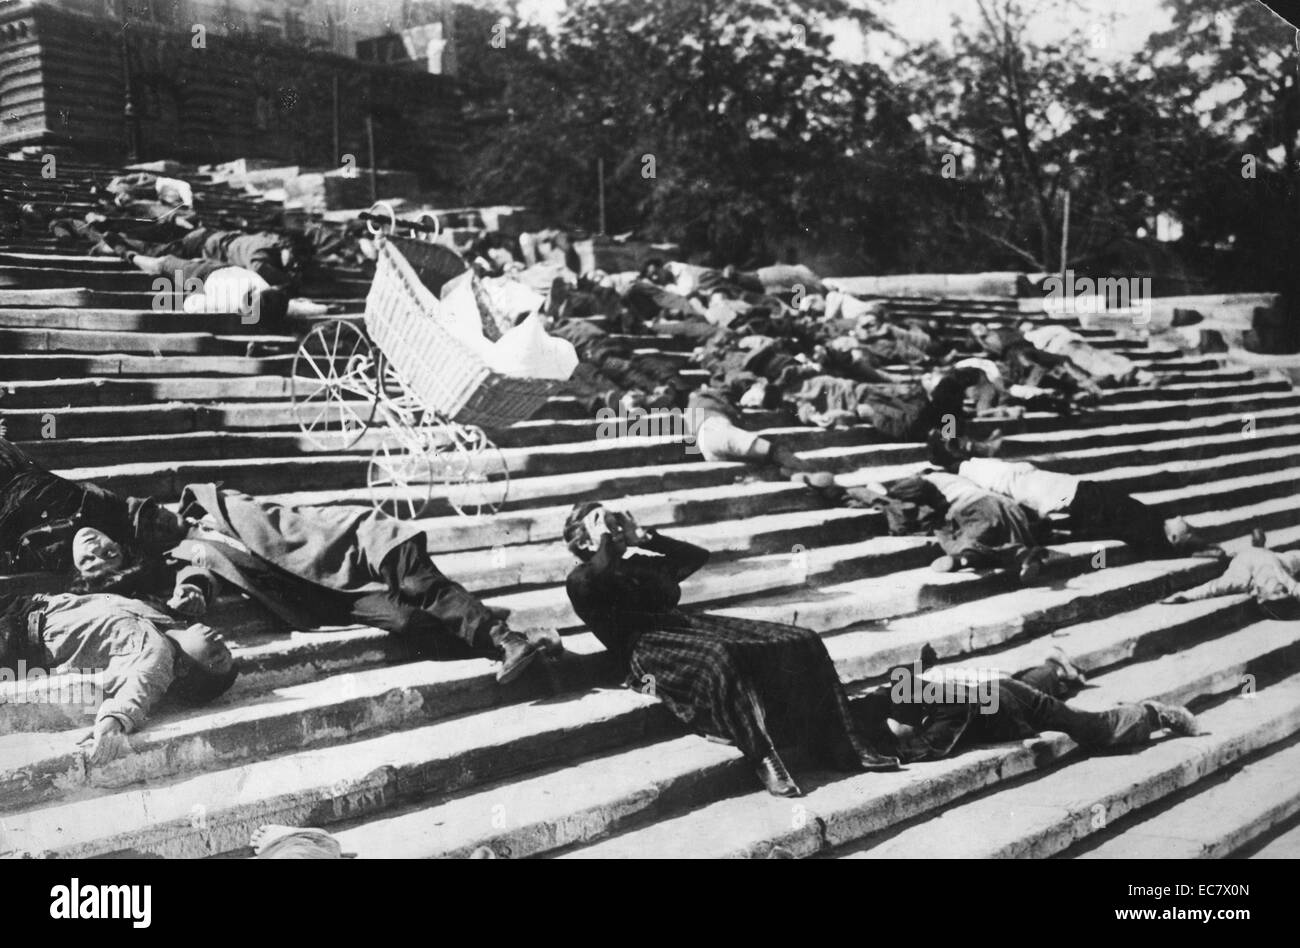 Corazzata Potemkin, 1925 è un film muto diretto da Sergei Eisenstein. Esso presenta una versione drammatizzata delle sommosse che si è verificato nel 1905, quando l'equipaggio della corazzata russa Potemkin si ribellarono contro i loro dirigenti del regime zarista Foto Stock